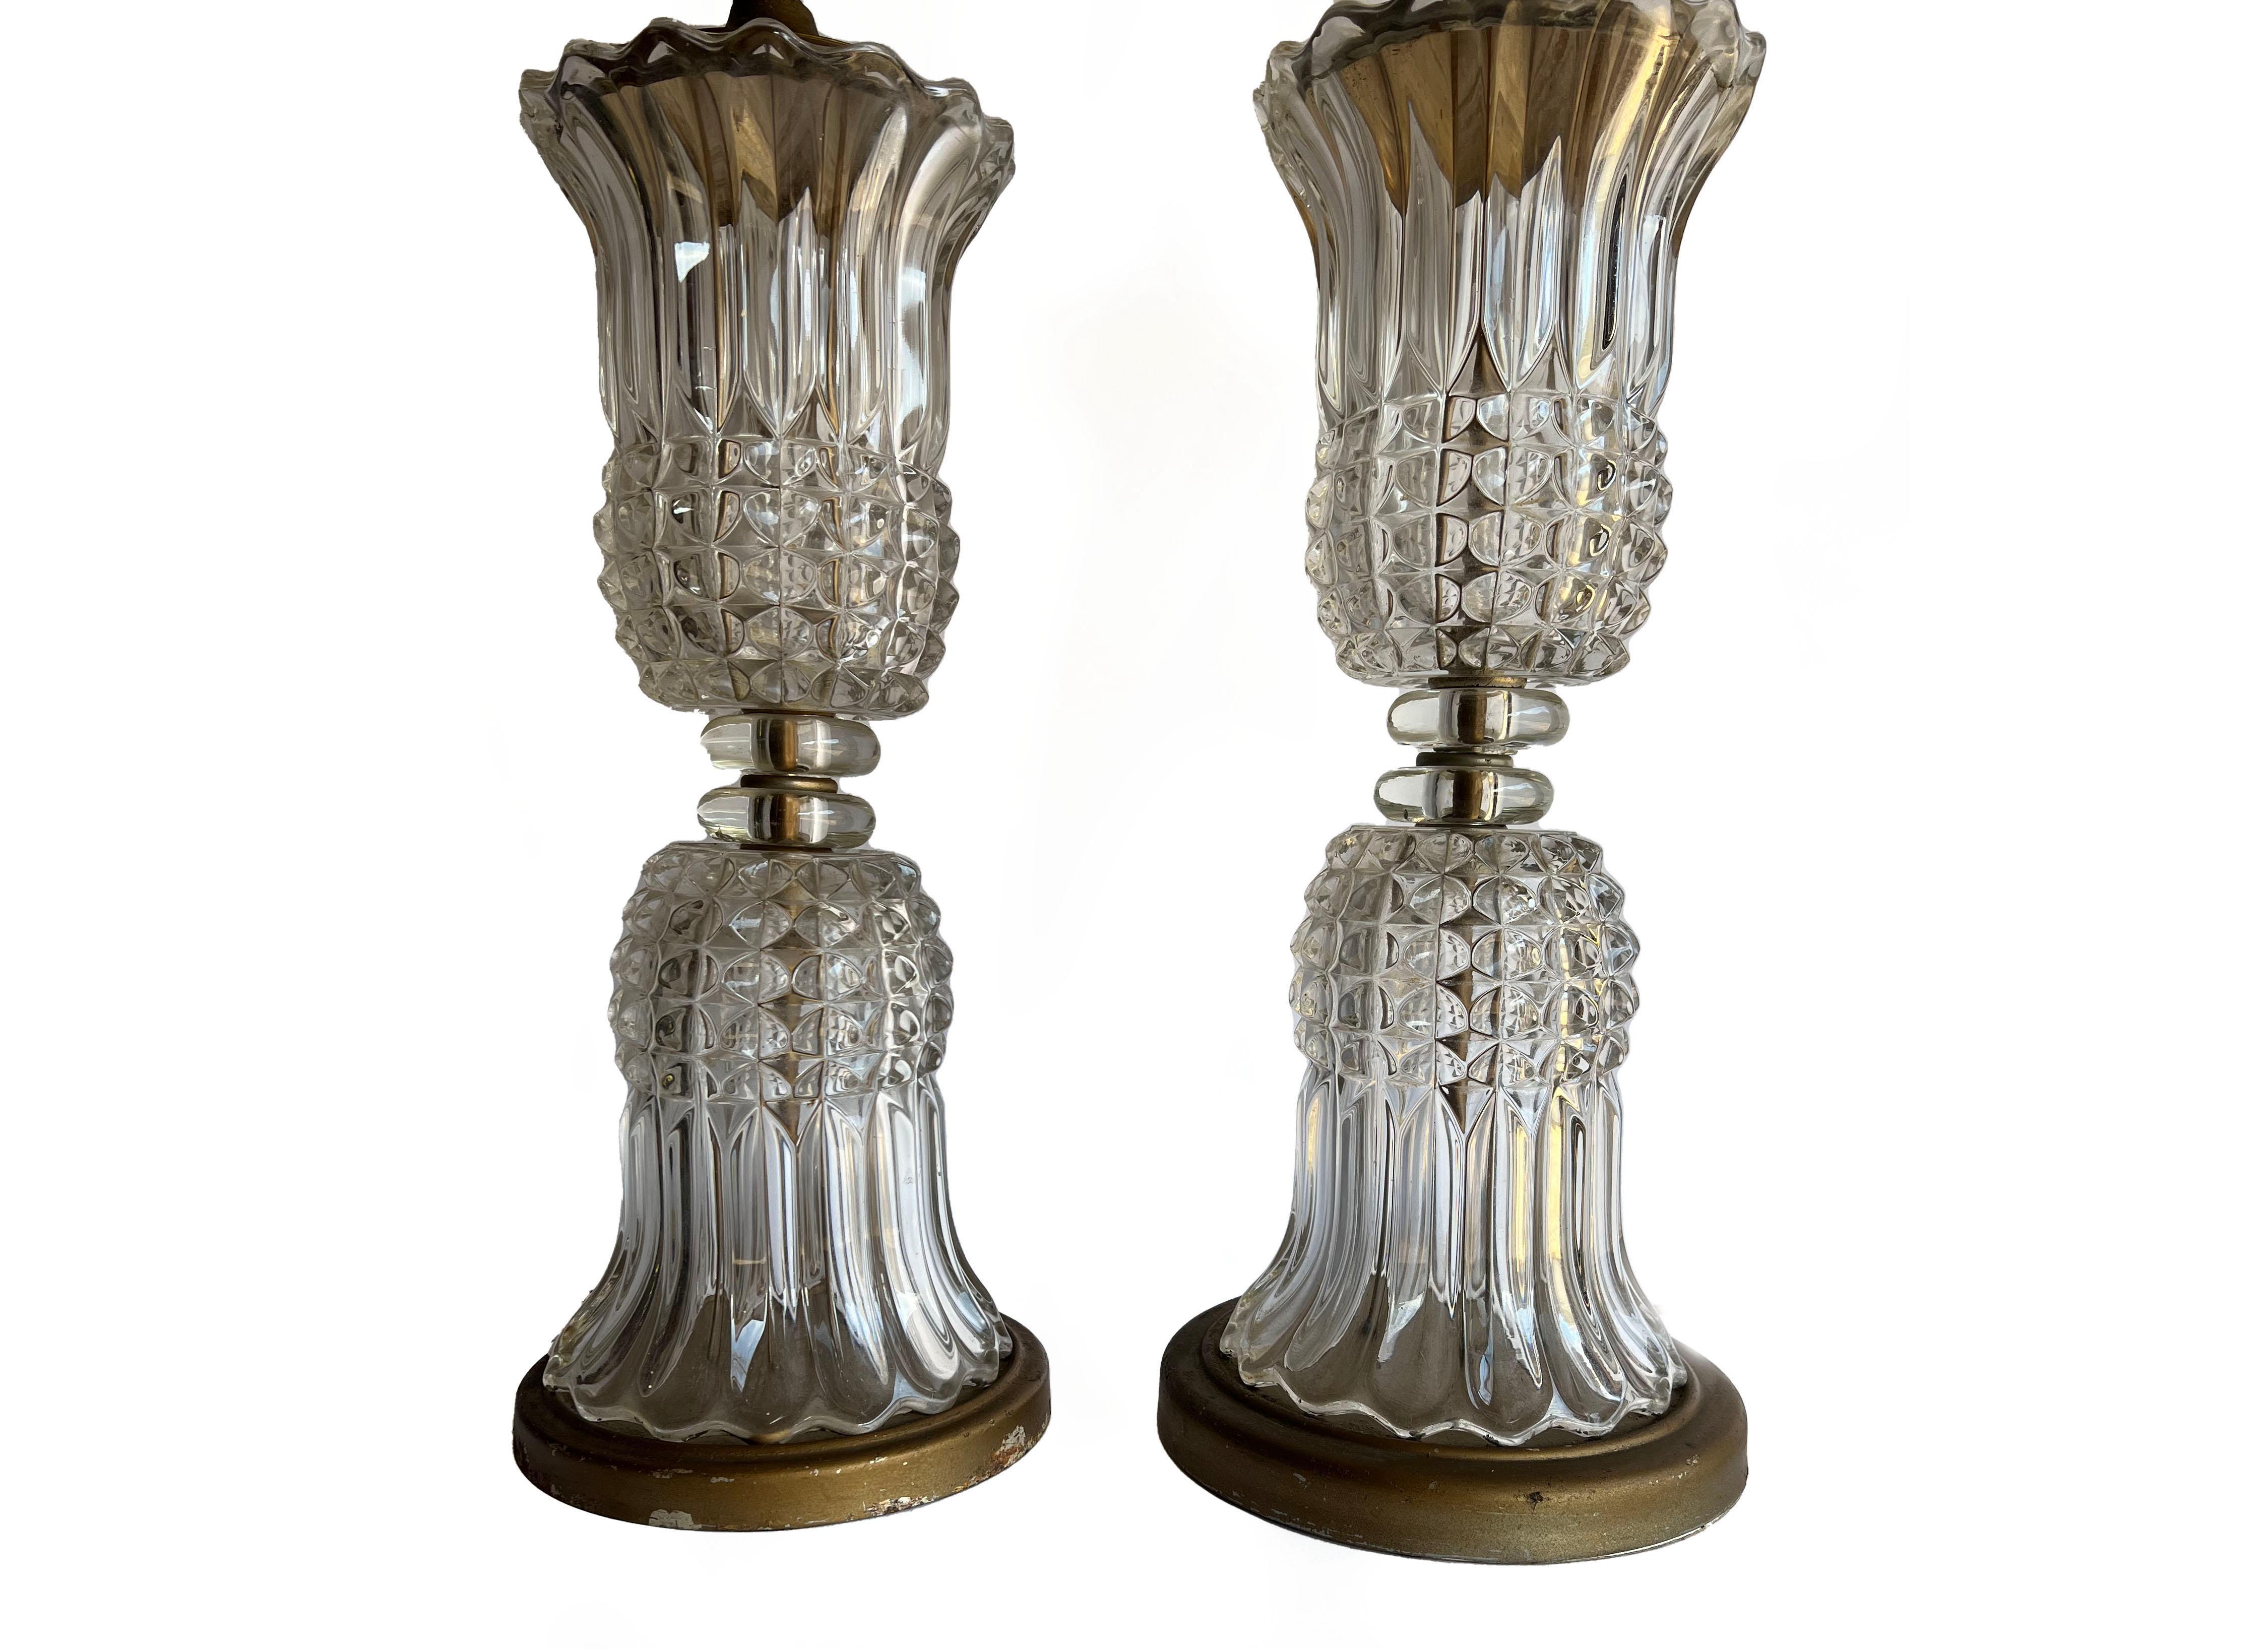 Paire de lampes anciennes en cristal moulé de style Empire français ou Hollywood Regency. Avec une forme de vase en cristal moulé, transparent et réfléchissant, inversé sur lui-même. Le verre est taillé en diamant et cannelé. Magnifiques lampes de